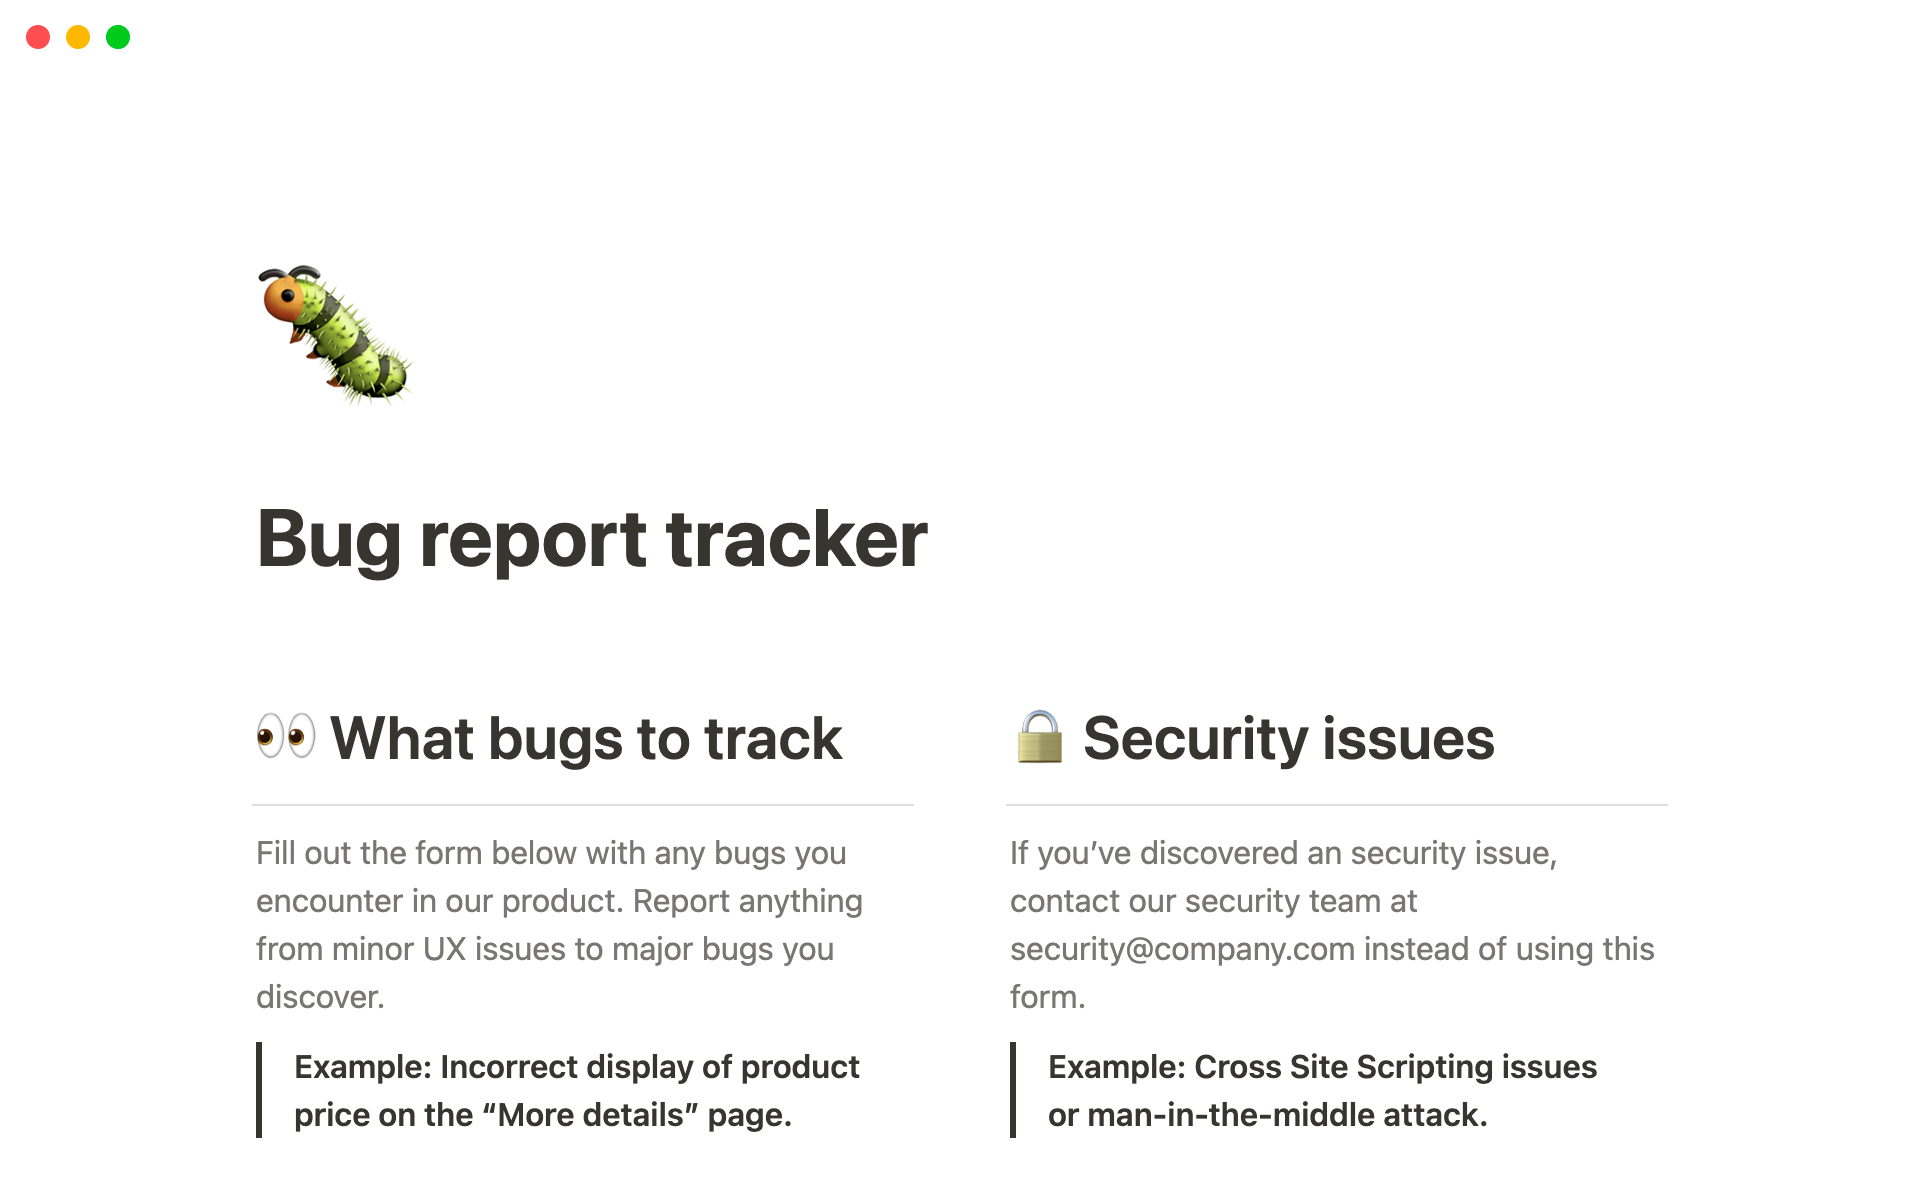 Uma prévia do modelo para Bug report tracker